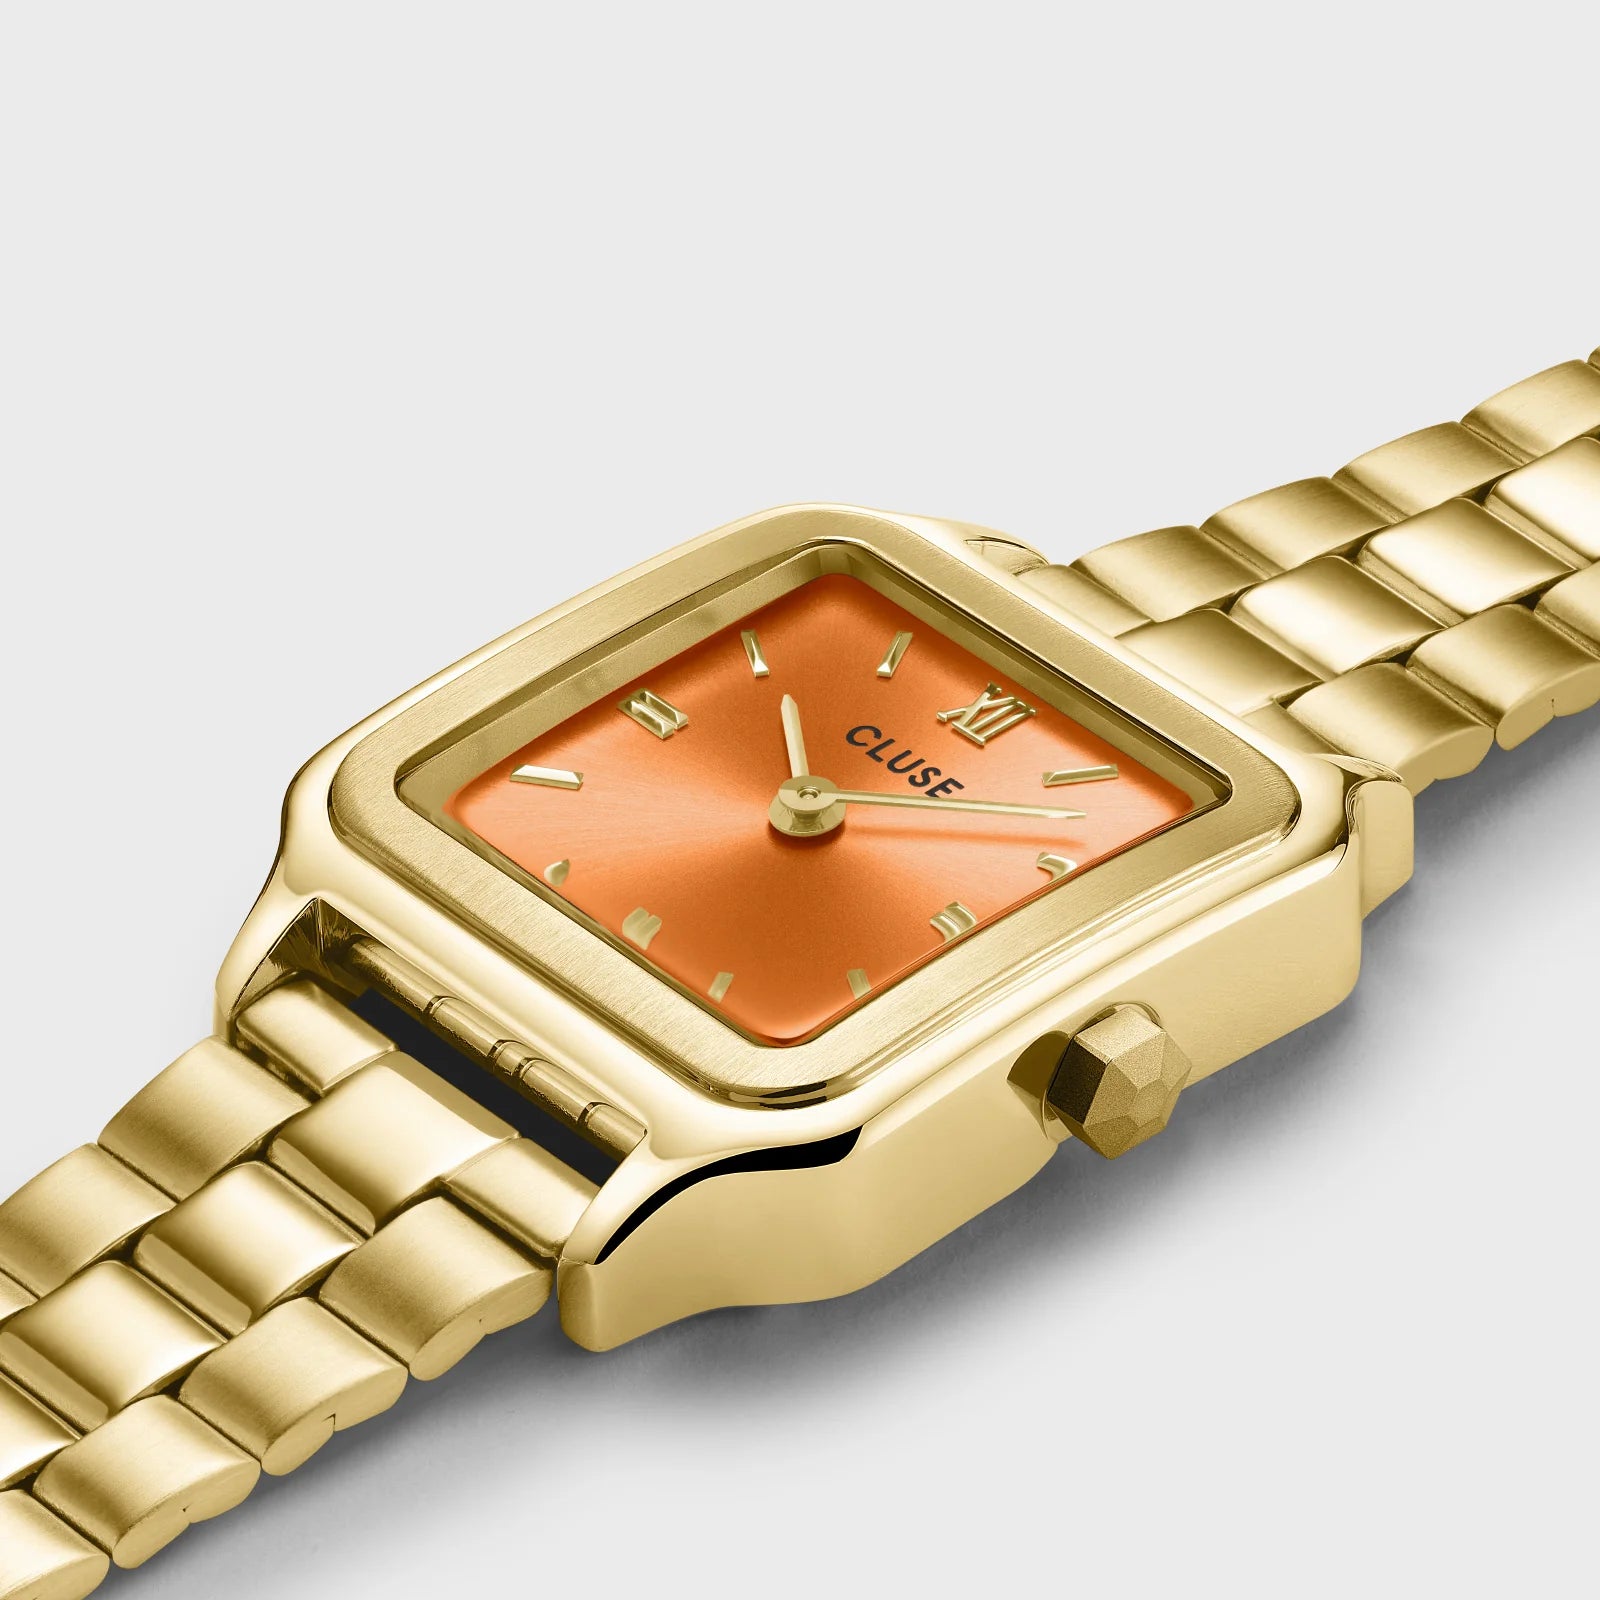 Detailansicht der Cluse Stahl-Uhr "Gracieuse Petite" mit einem gelbgold-farbenem Gehäuse und orangem Zifferblatt